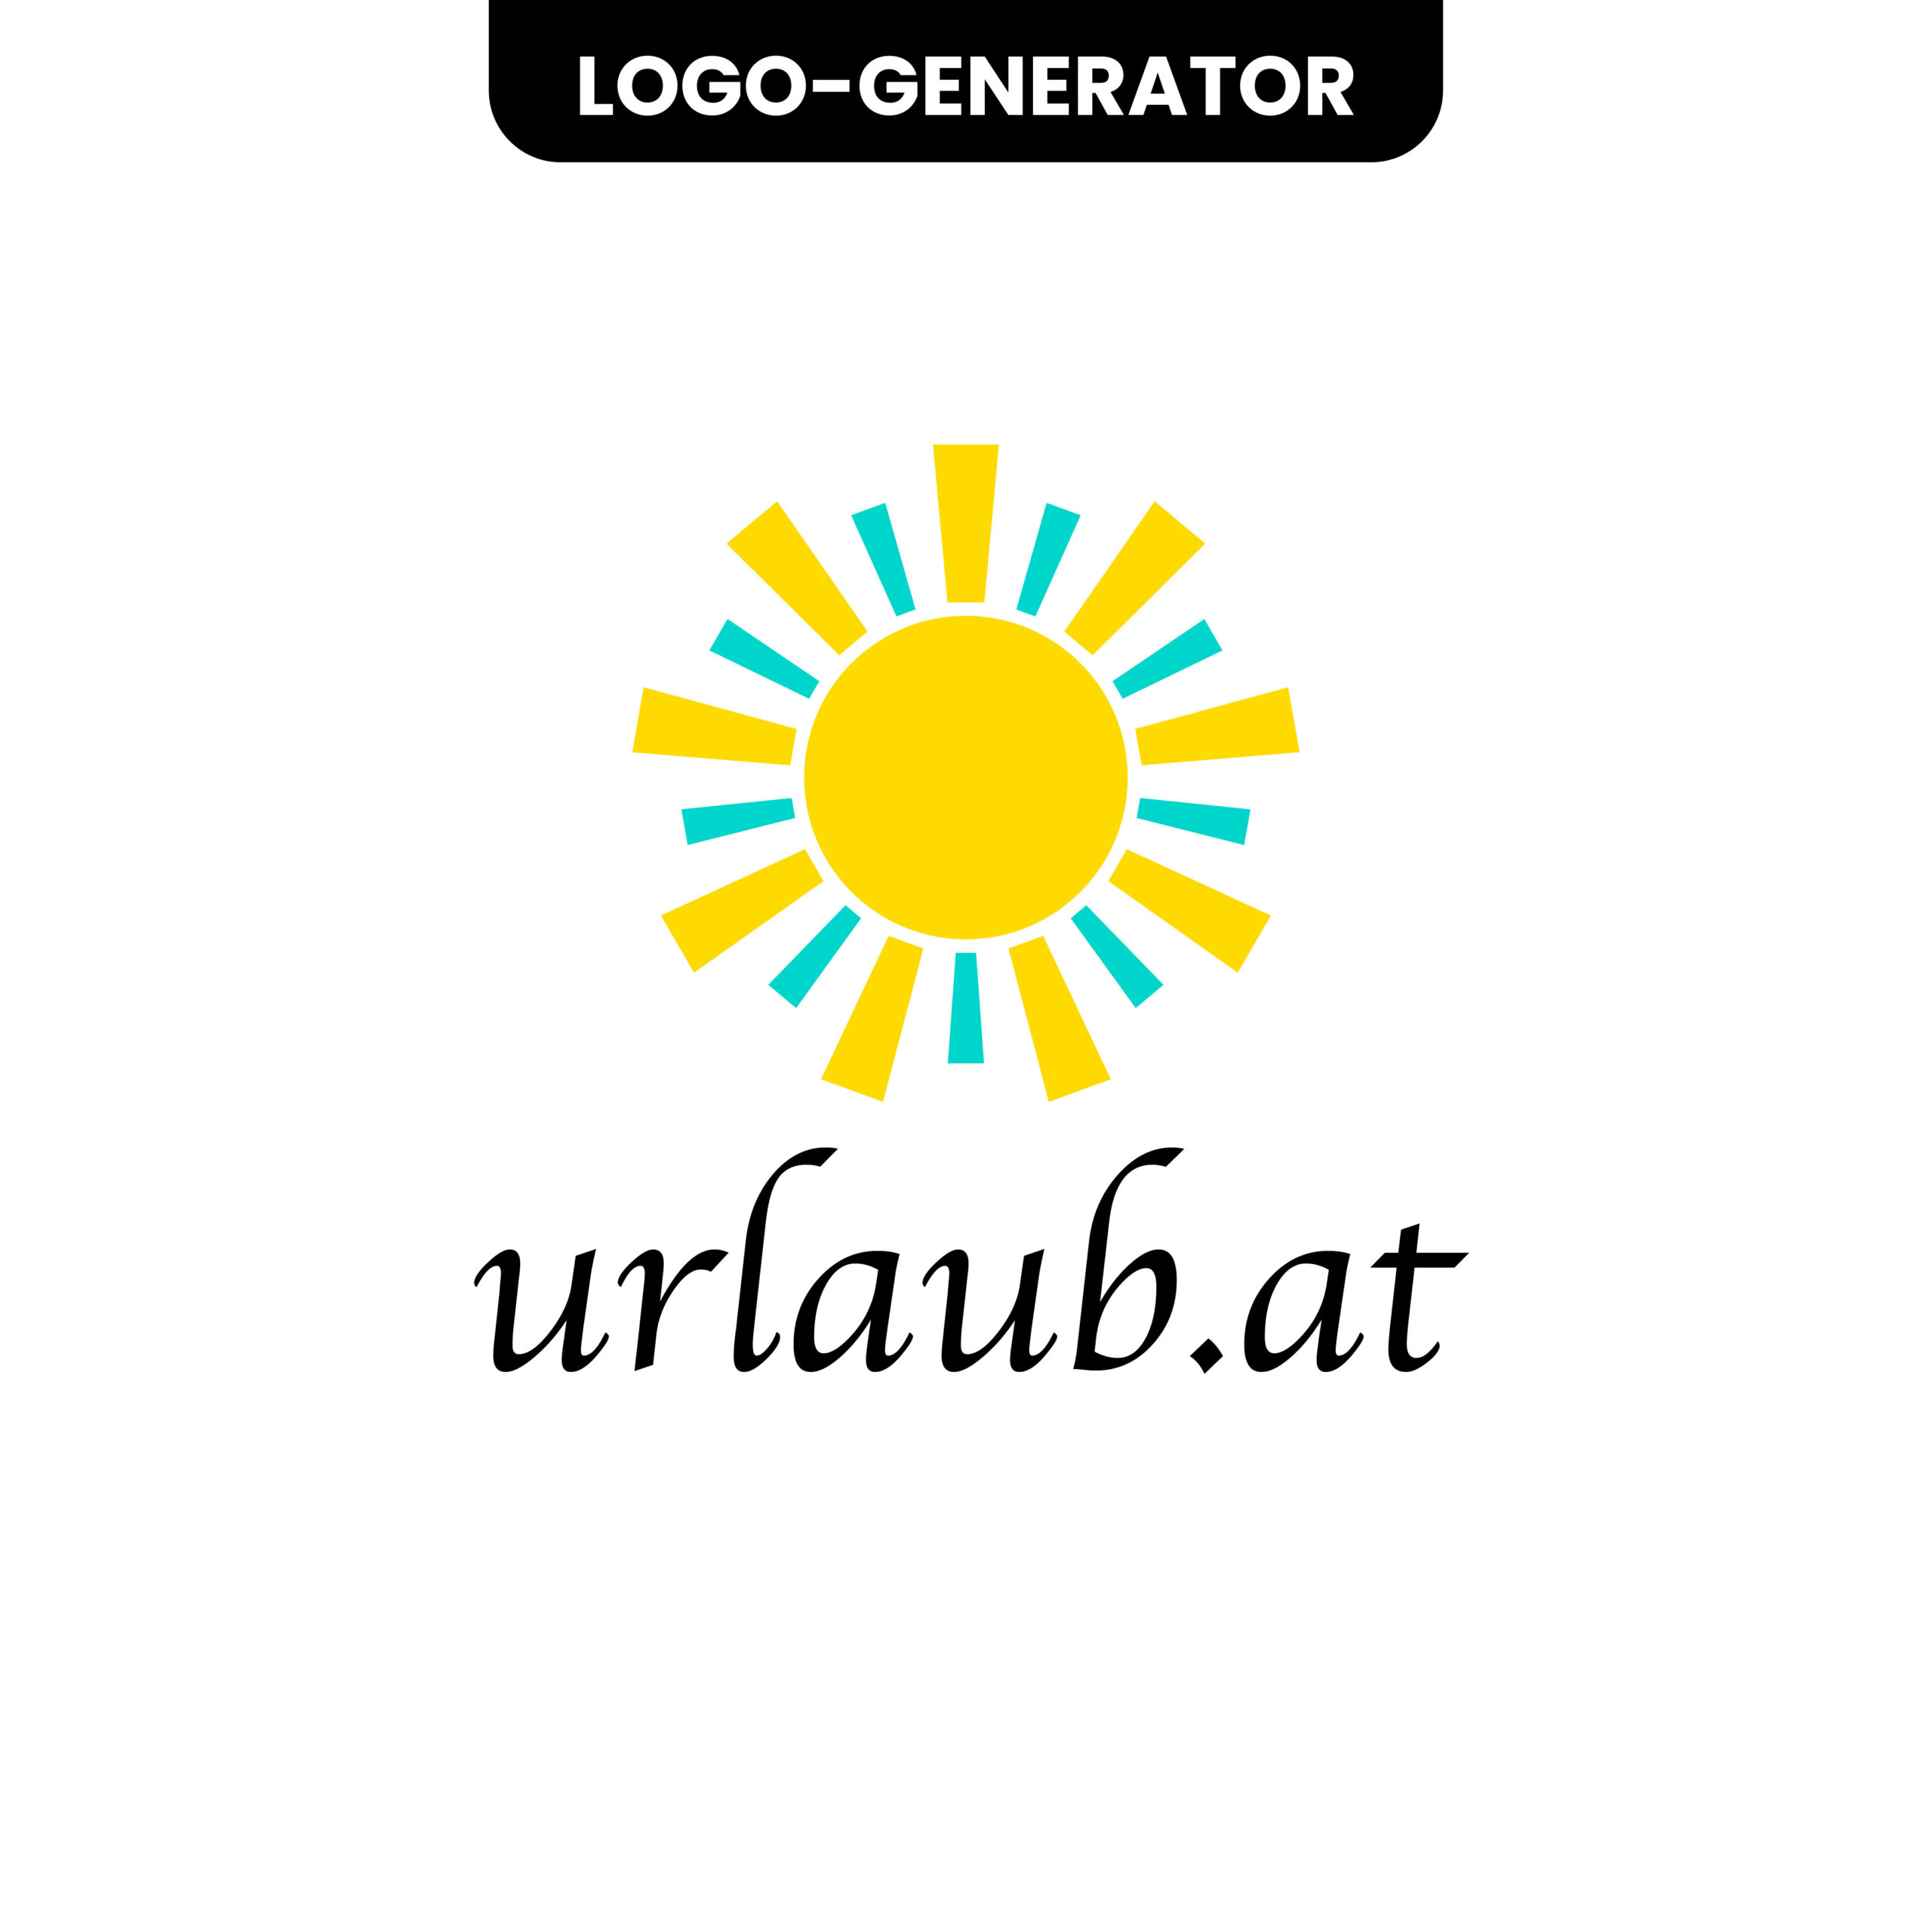 Urlaub.at Logo aus einem Logo Generator als Vergleich Bild